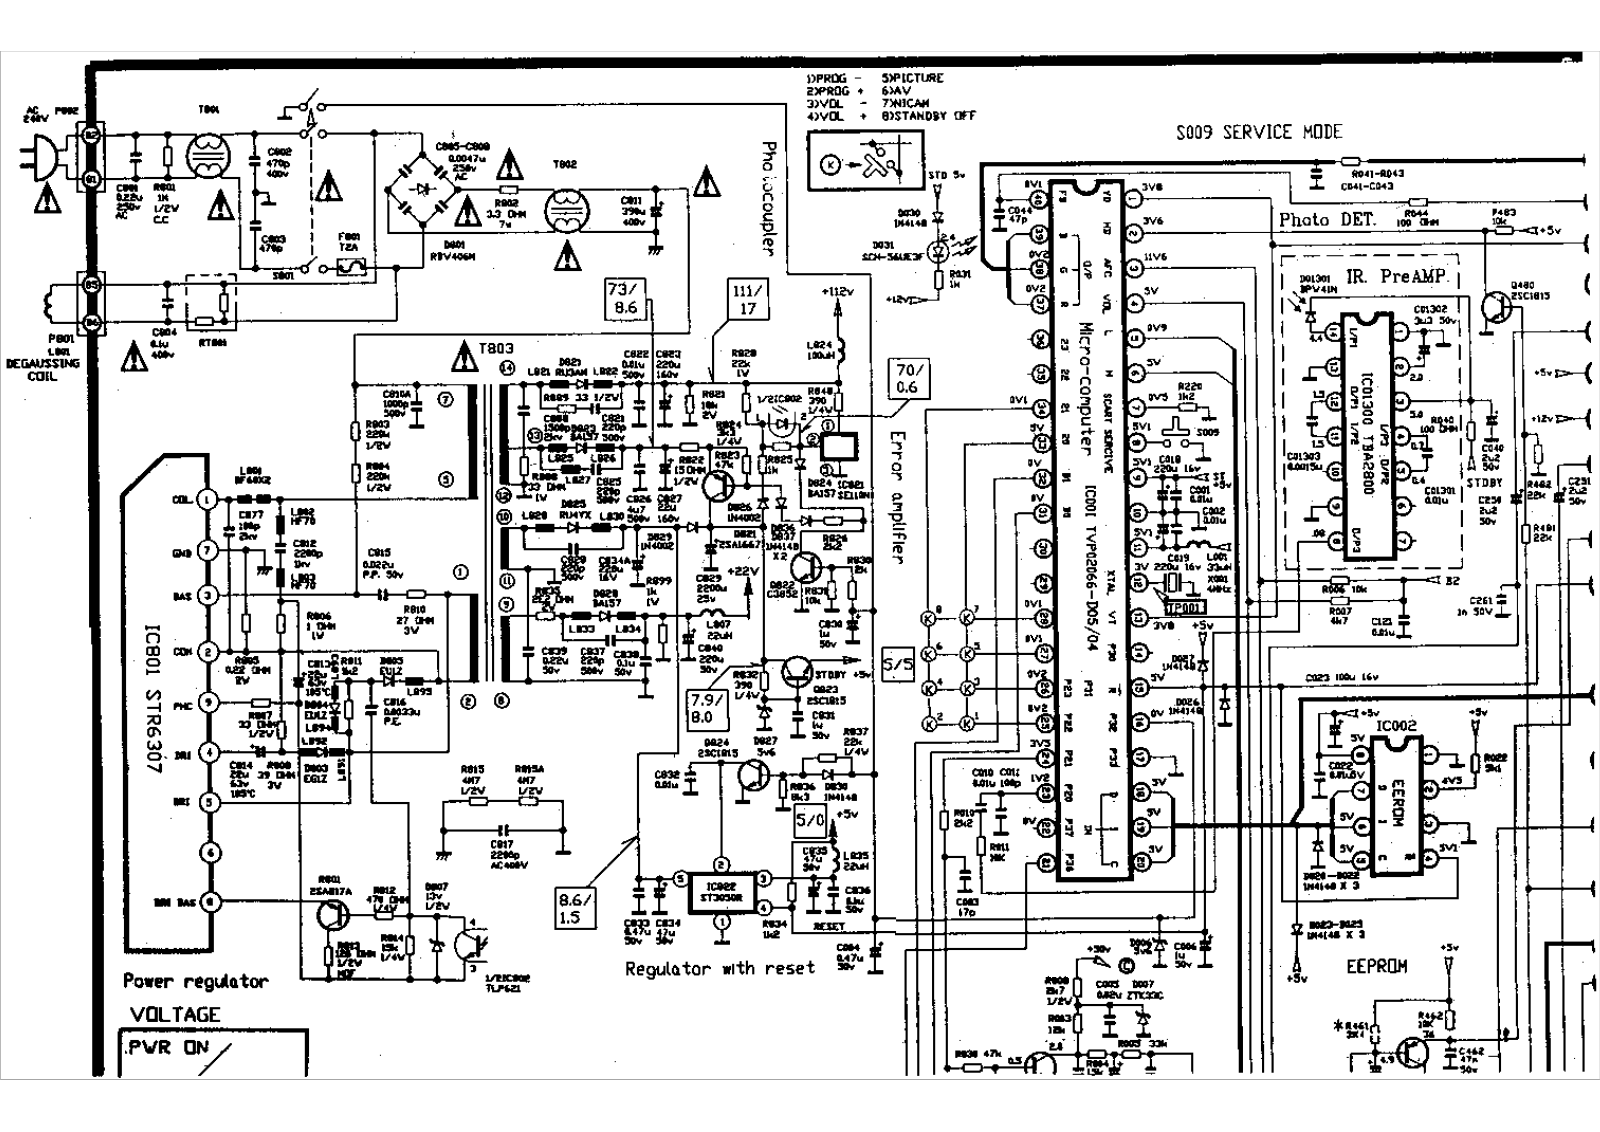 Aiwa a145, a205 schematic